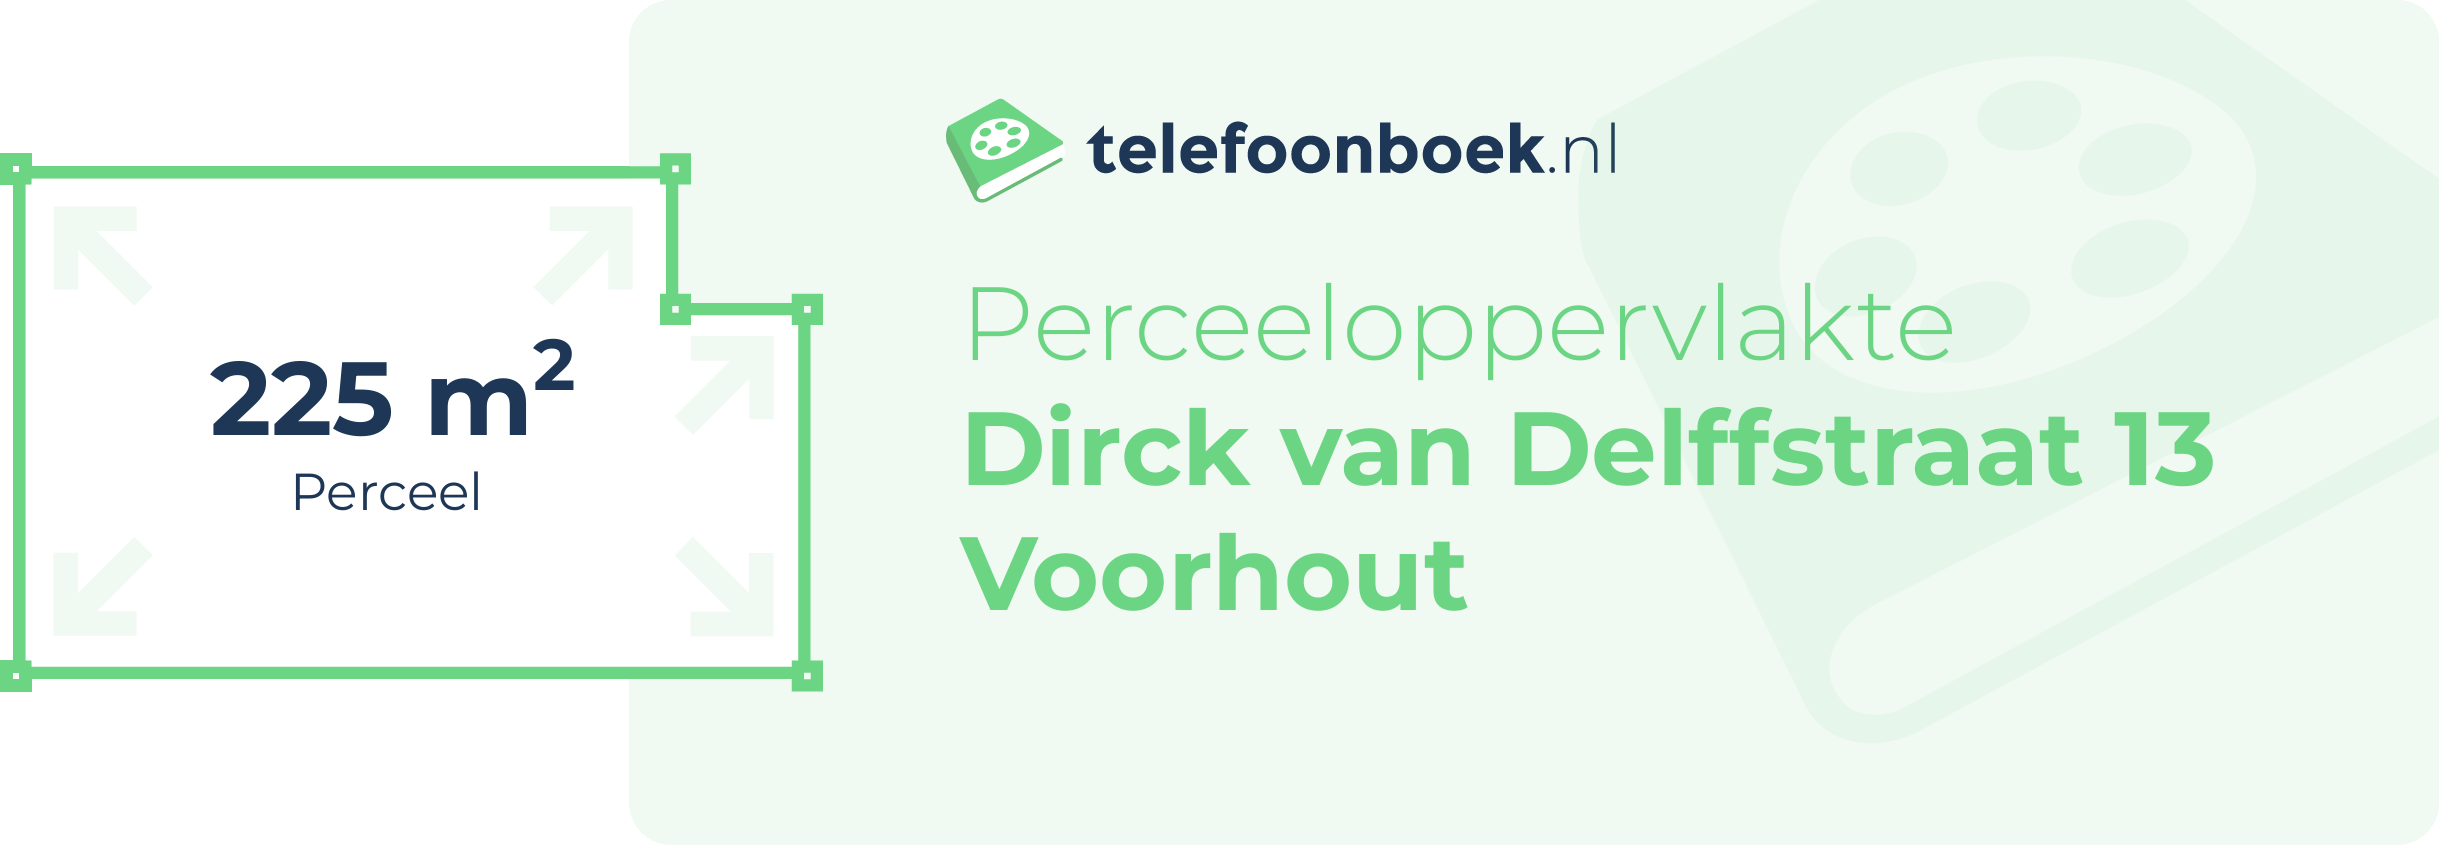 Perceeloppervlakte Dirck Van Delffstraat 13 Voorhout